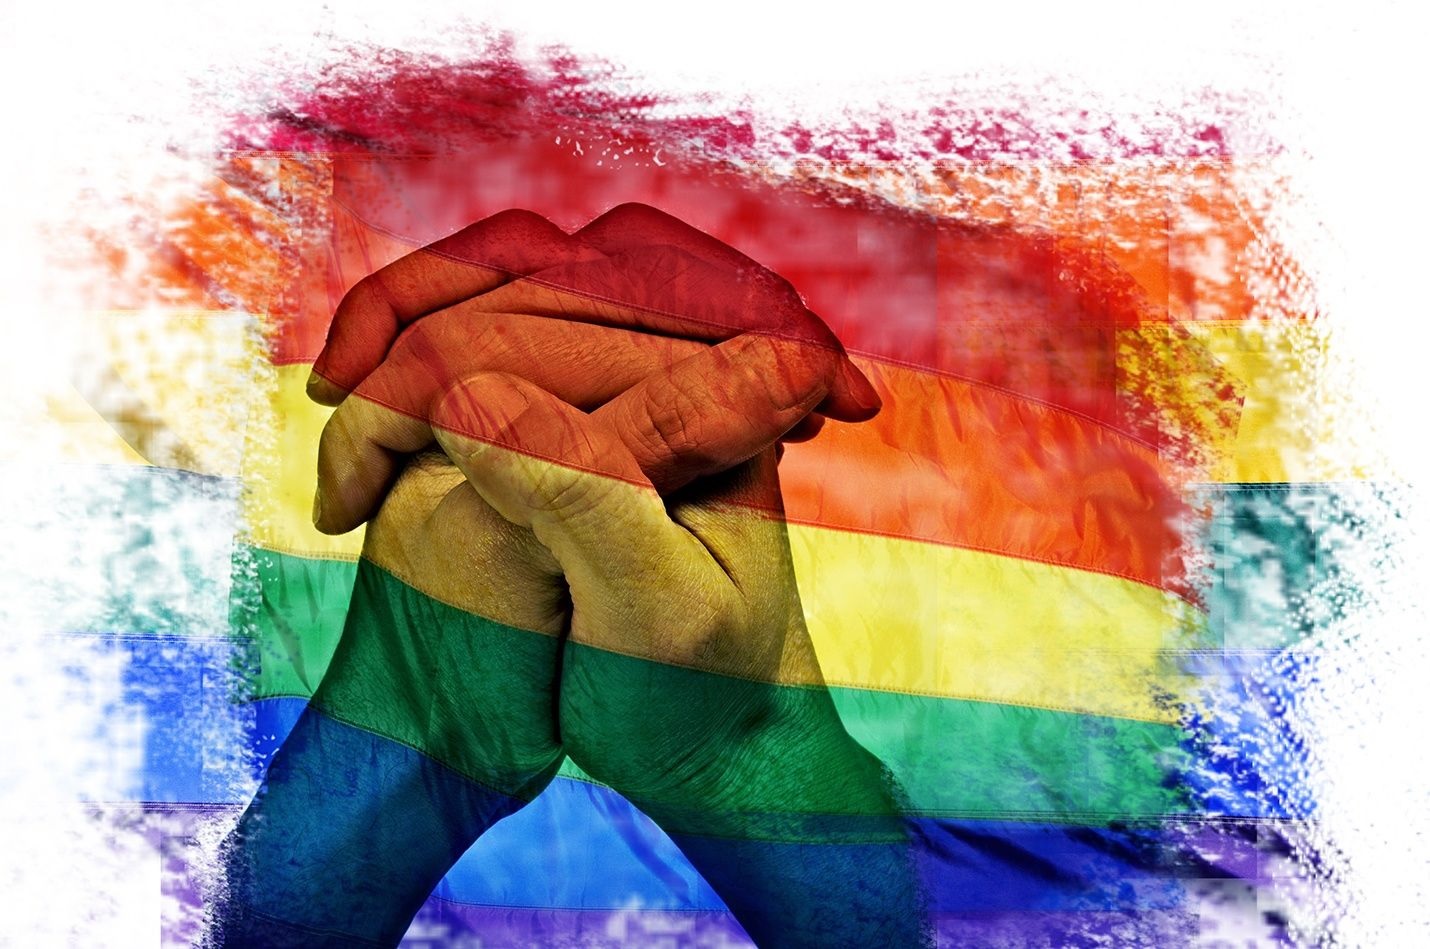 Bộ Sưu Tập Hình Ảnh LGBT Nổi Bật Với Hơn 999 Tấm Ảnh Chất Lượng 4K